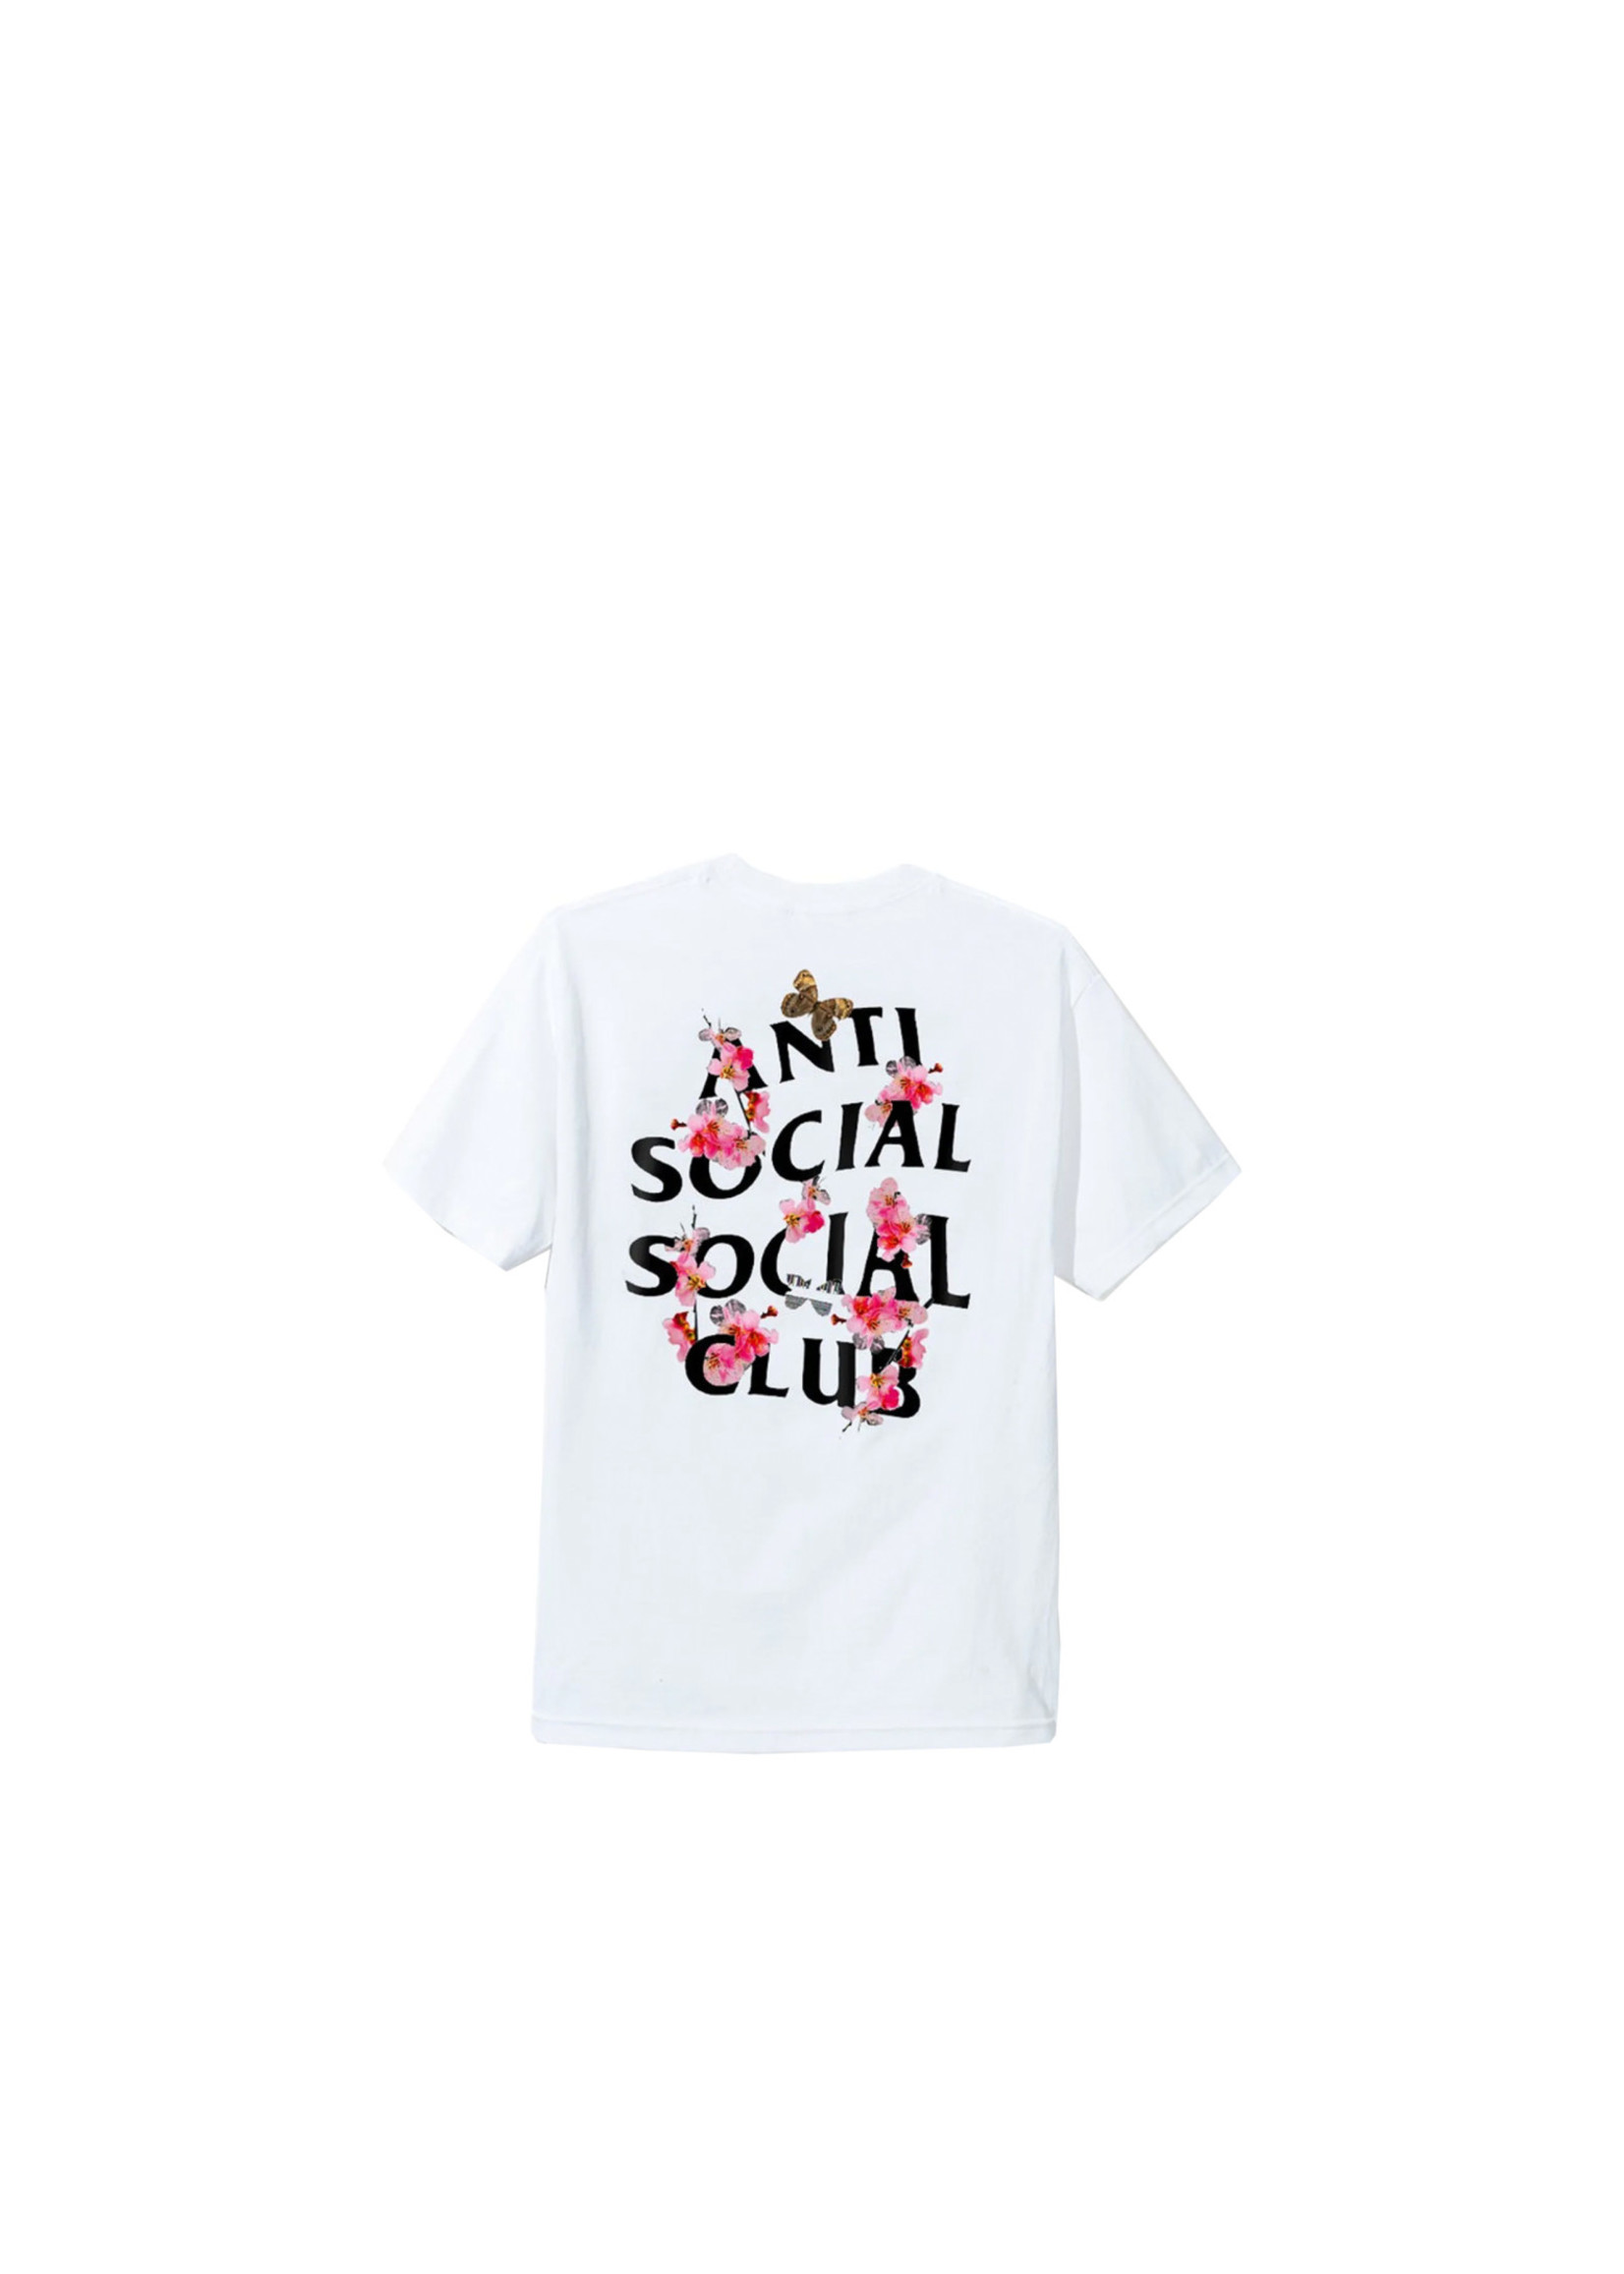 Anti Social Social Club ASSC "Kkoch" Tee White